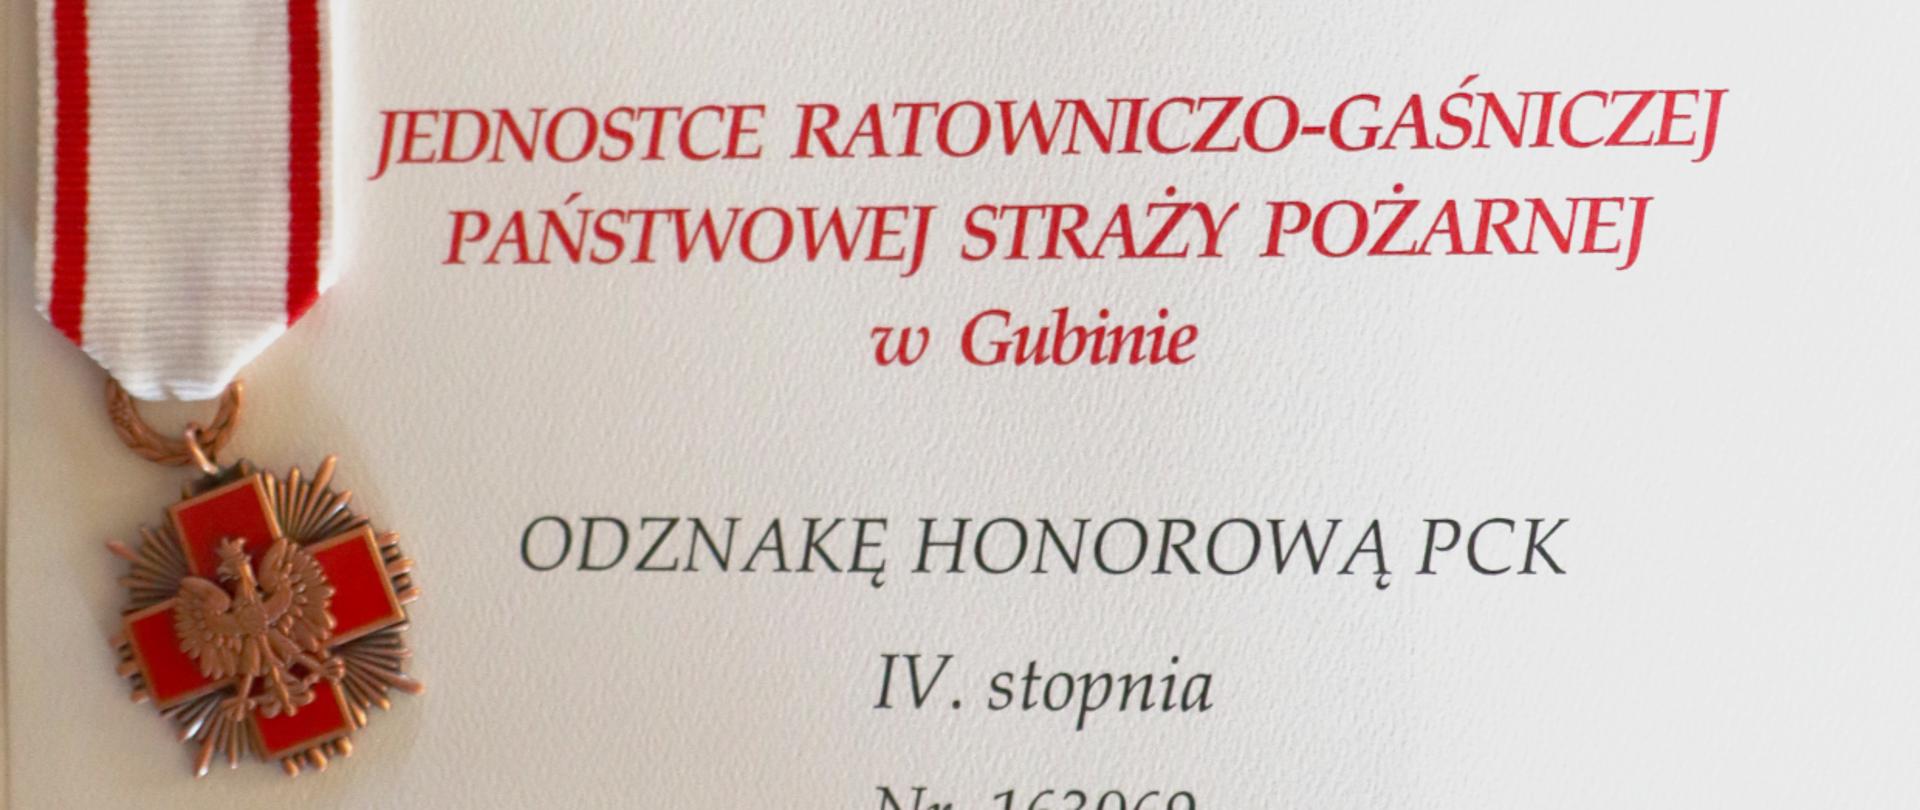 Zdjęcie przedstawia dokument informujący o nadaniu Jednostce Ratowniczo-Gaśniczej Państwowej Straży Pożarnej z Gubina Odznakę Honorową Polskiego Czerwonego Krzyża IV stopnia.